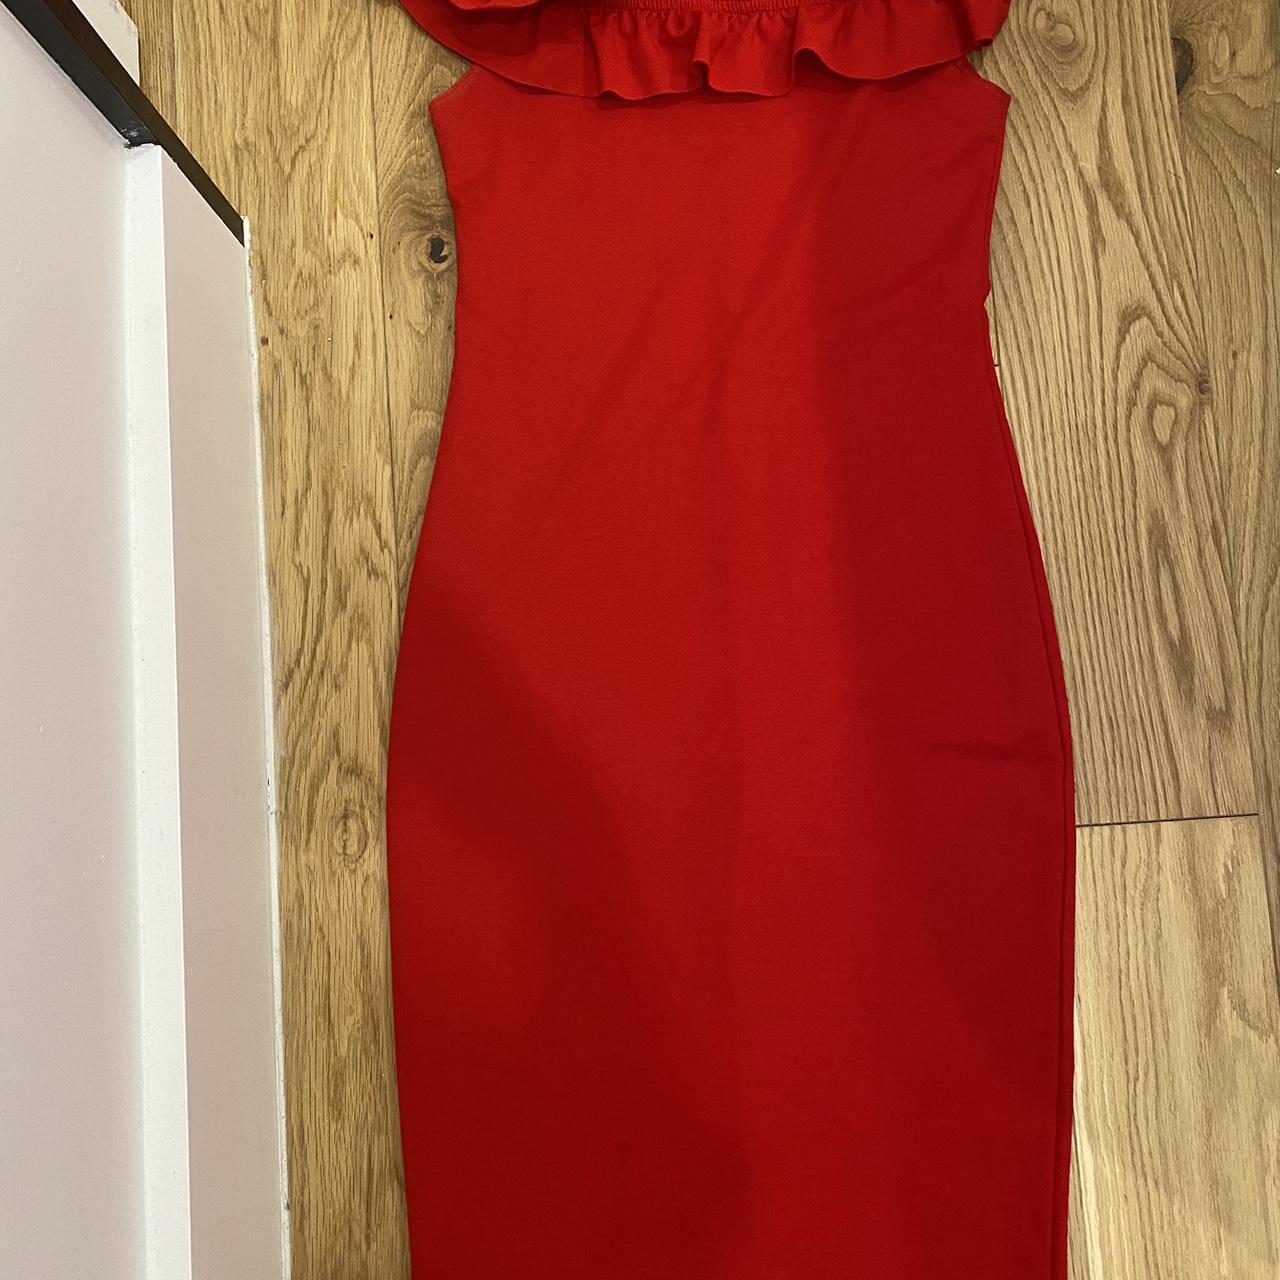 SEQUIN DRESS | Red sequin mini dress, Red sequin dress, Sequin dress